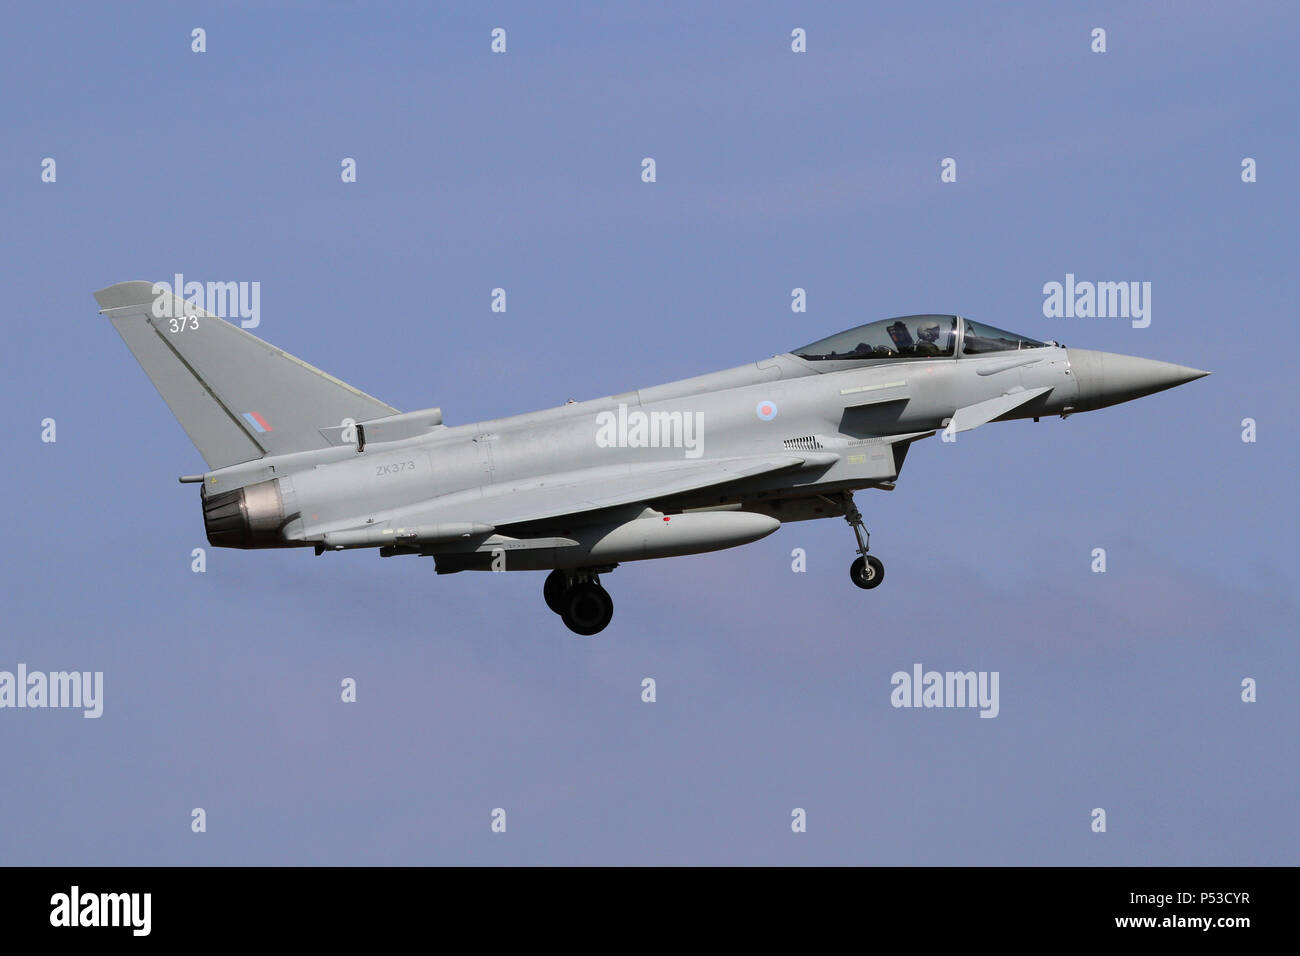 Questo Eurofighter Typhoon FGR4 era uno dei più nuovi in servizio con la Royal Air Force quando fotografato. Foto Stock